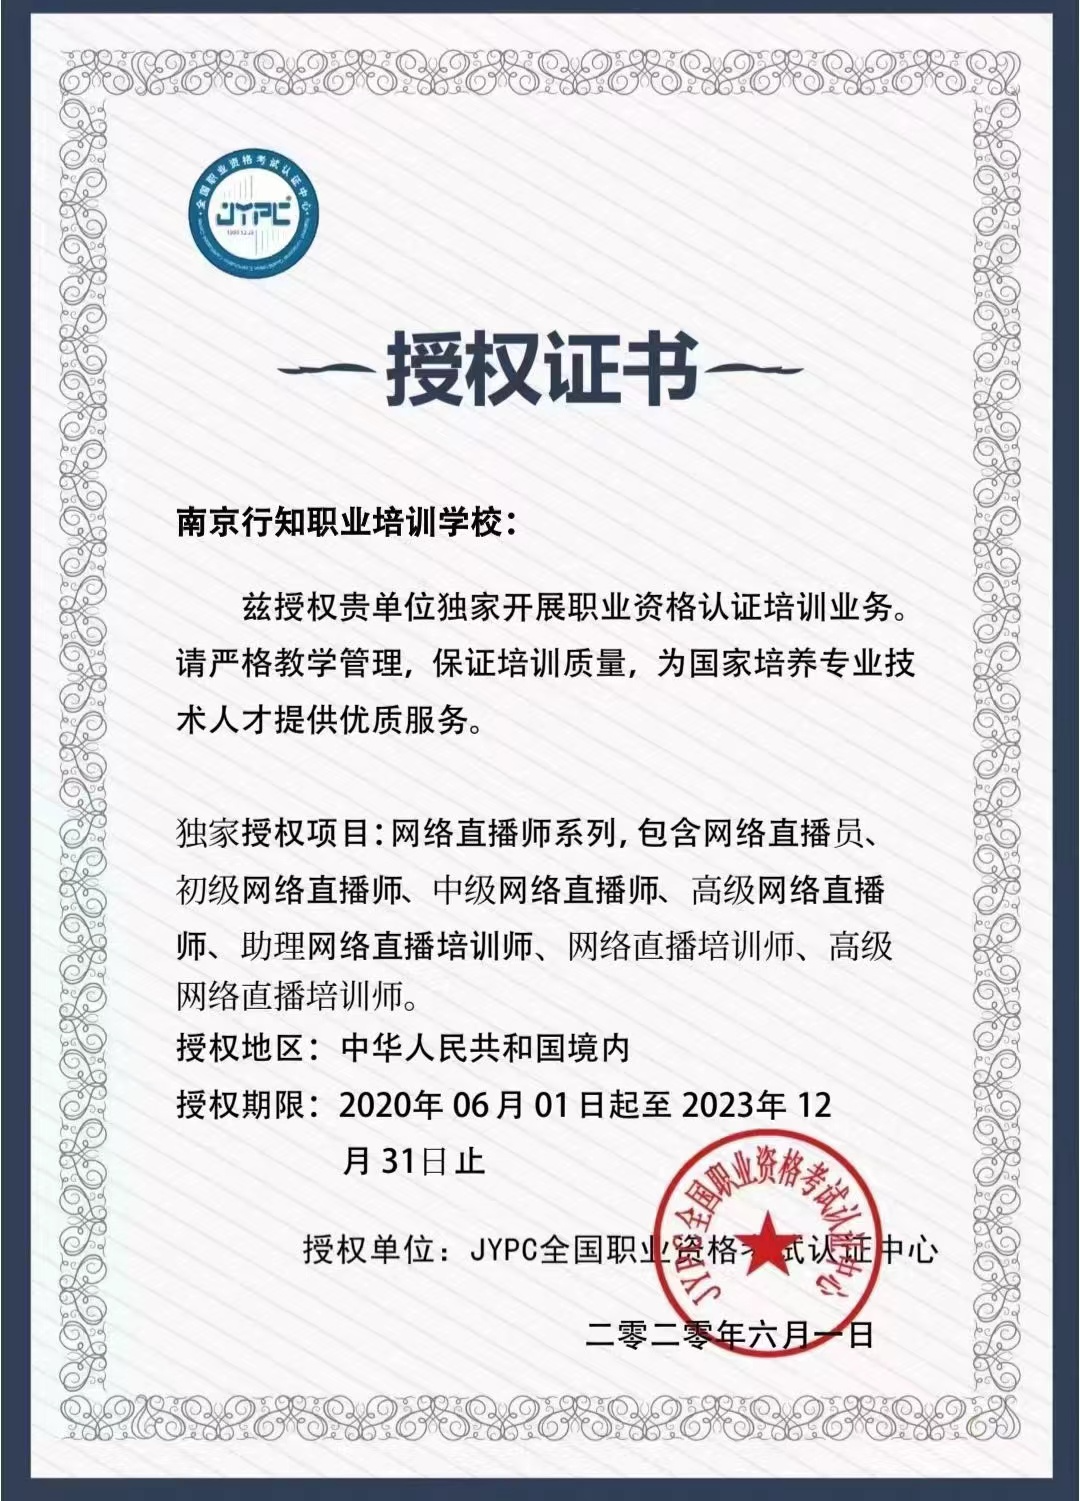 英才公司开展对外合作的授权证书。江苏省人社厅供图